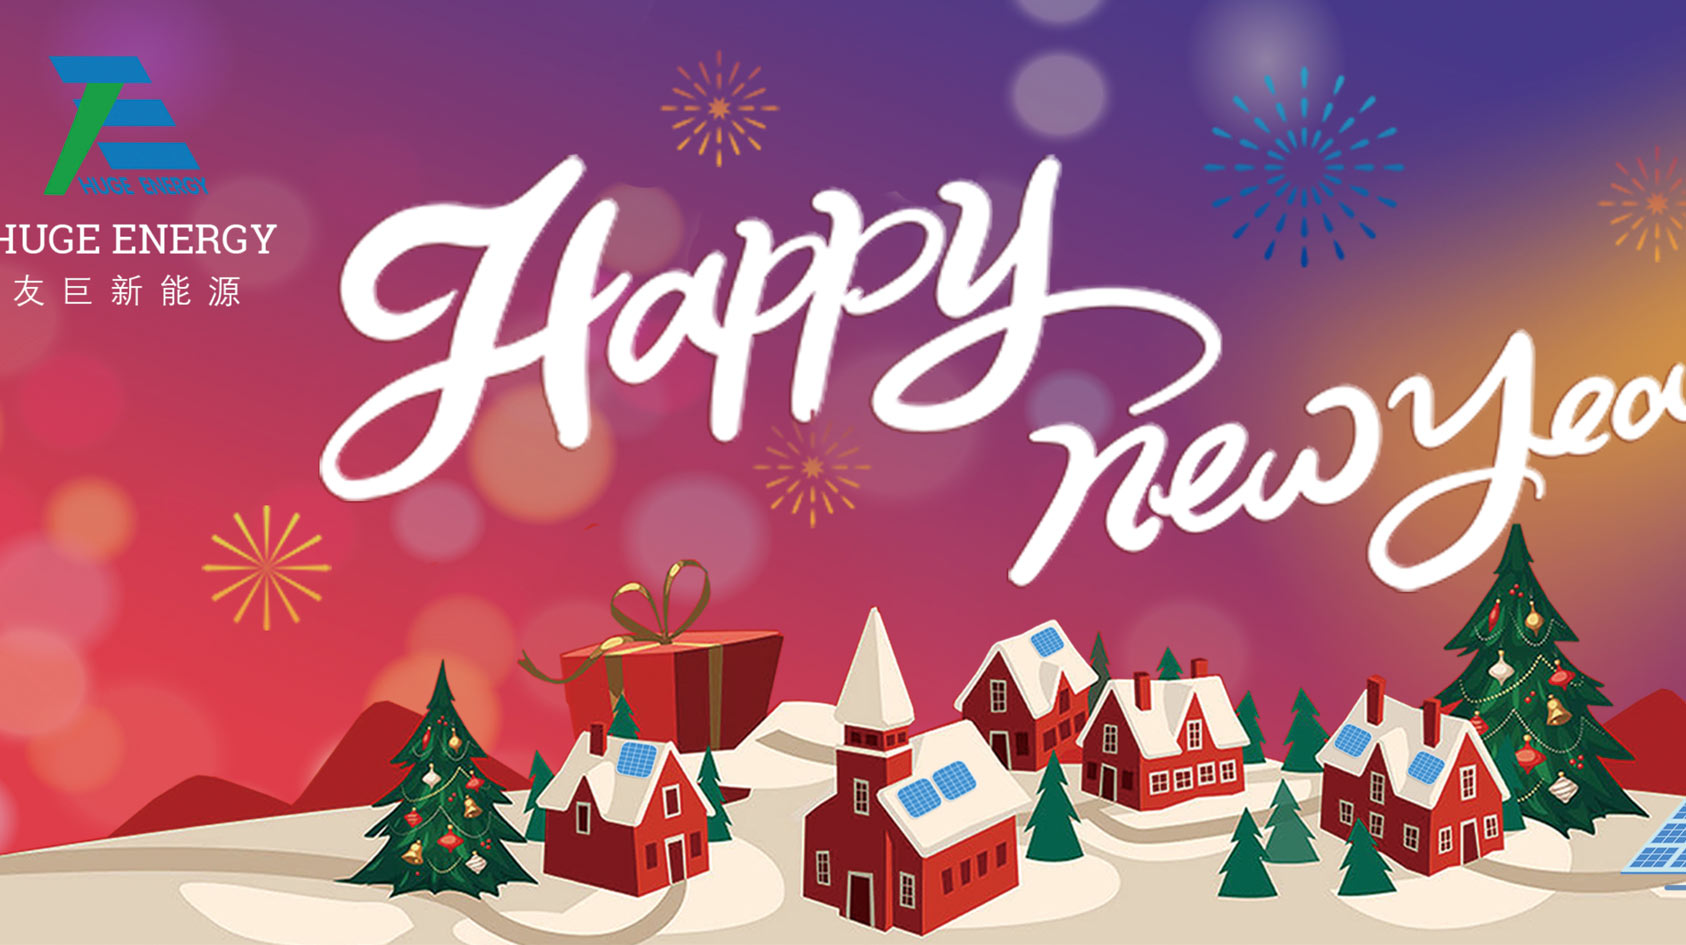 Yeni yılın başlangıcında, Huge Energy size mutlu bir yıl diler!